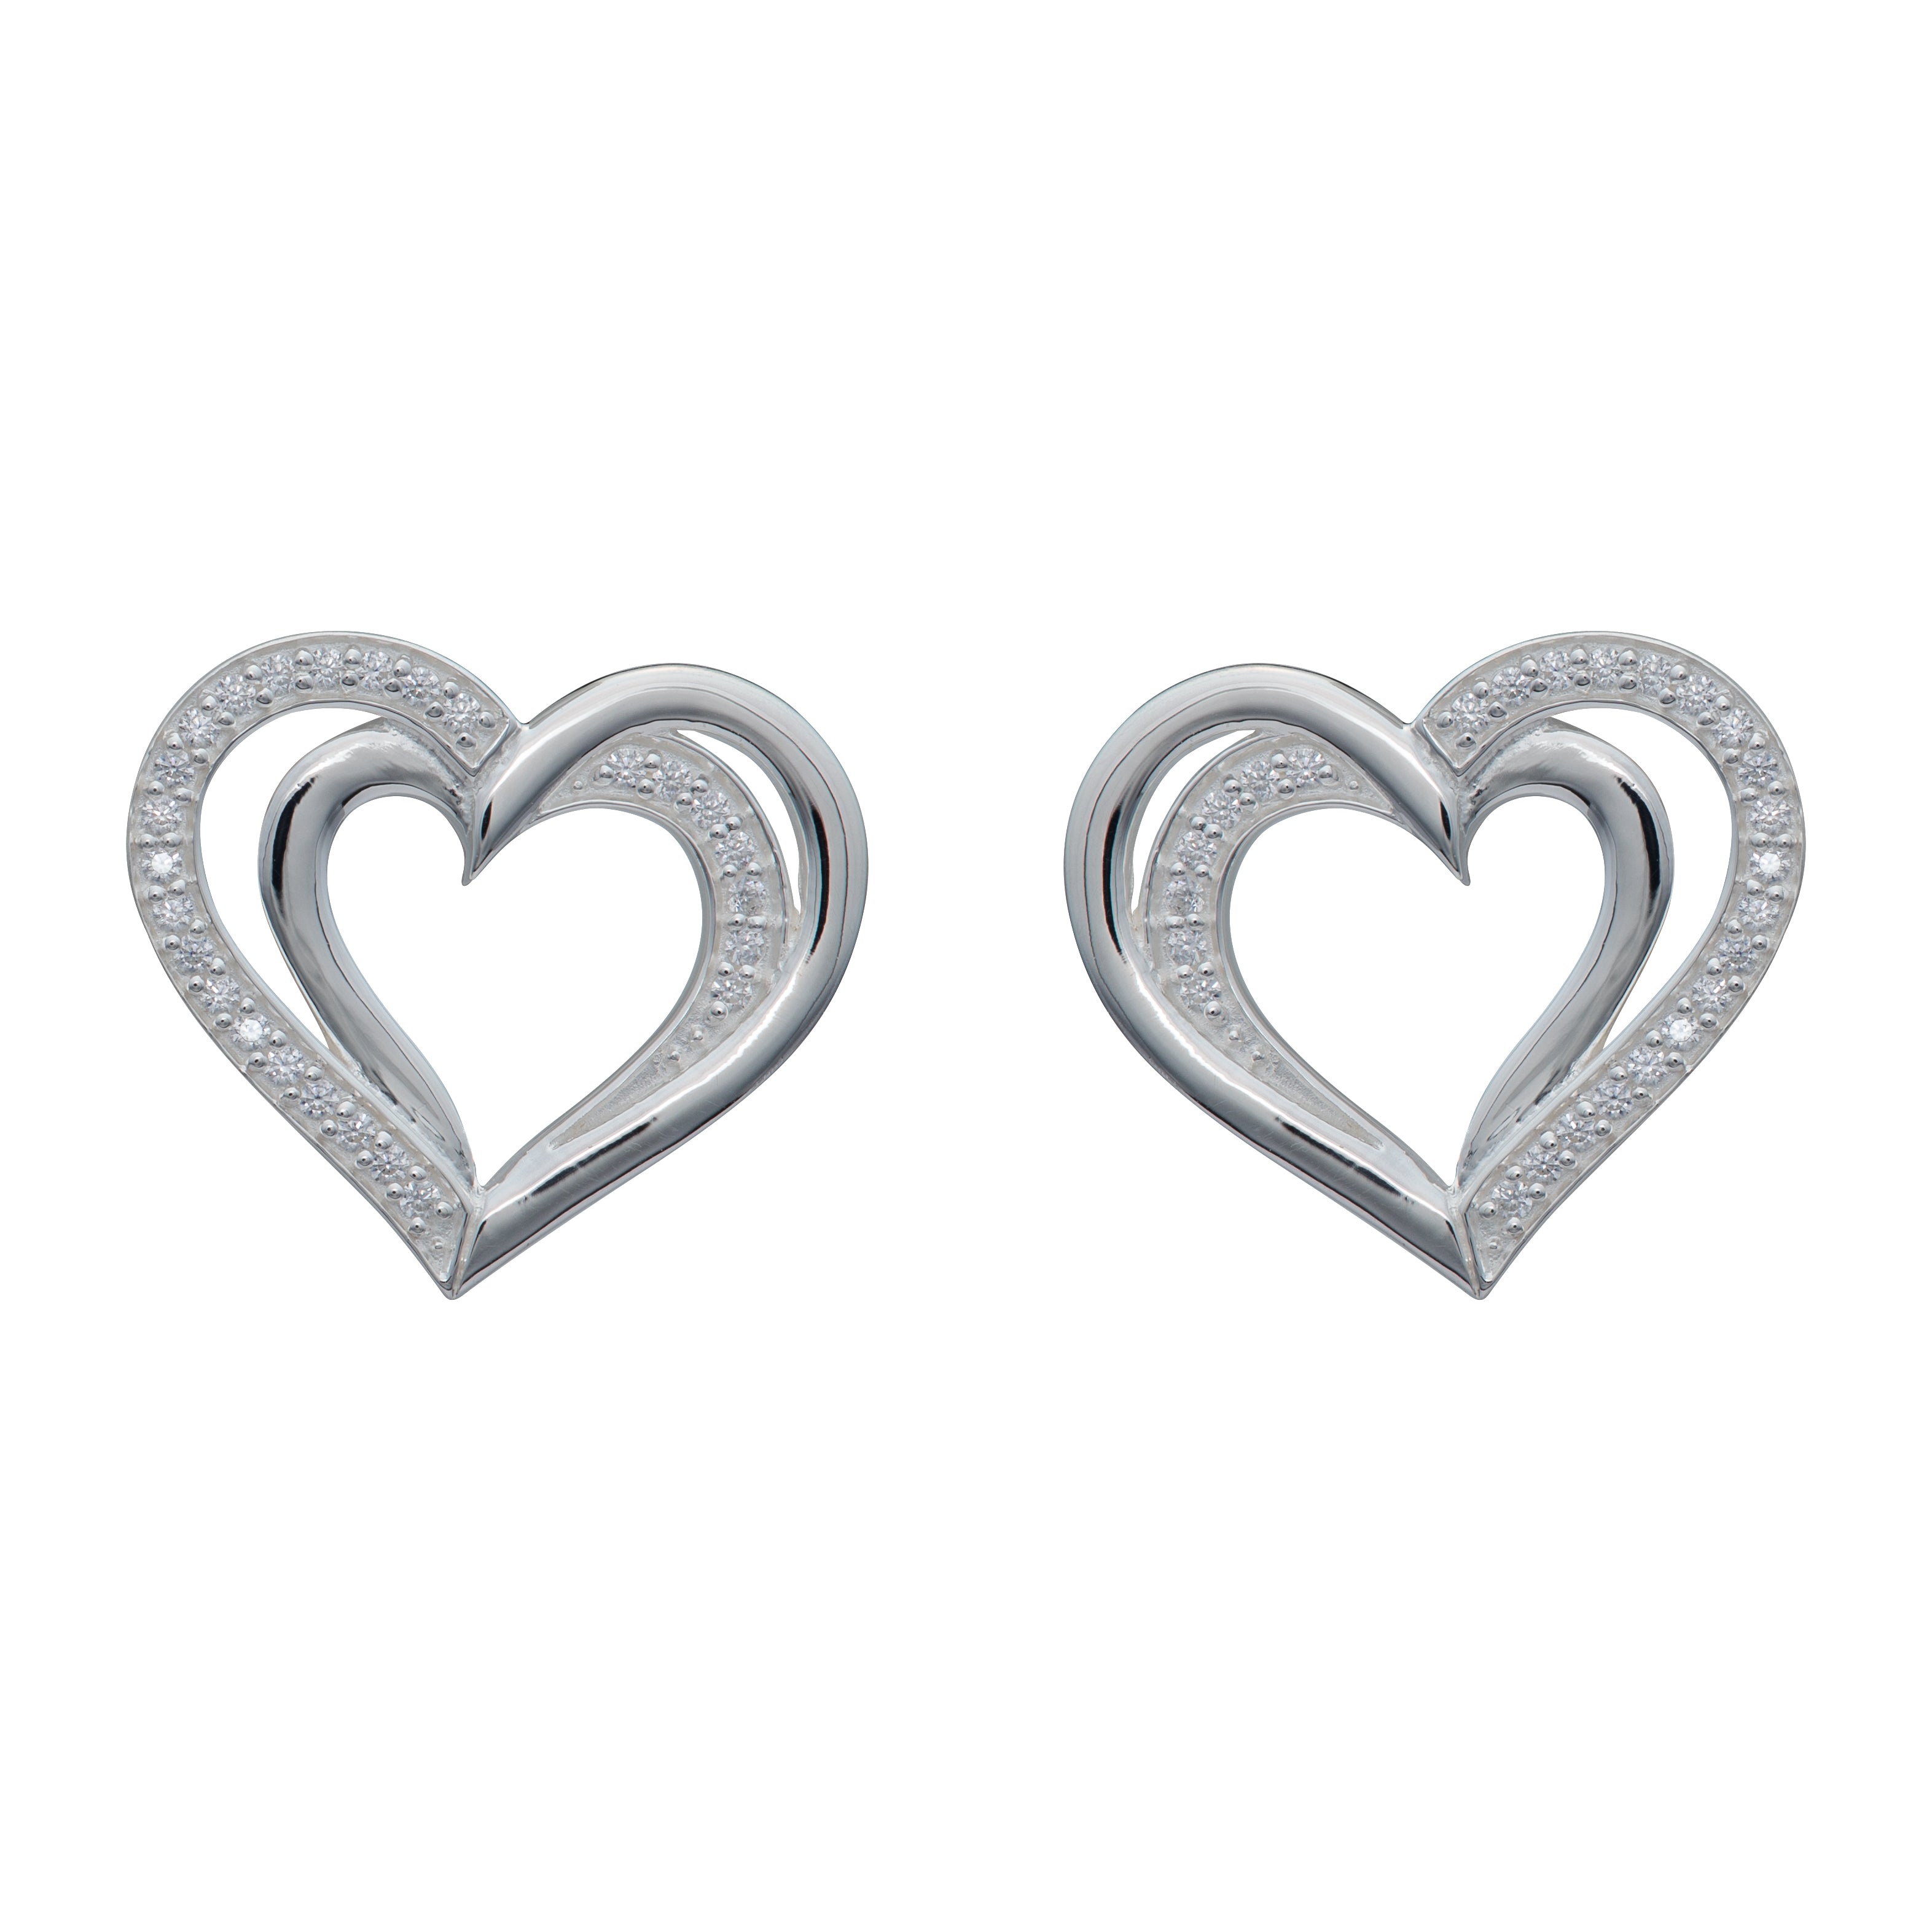 Unique & Co Silver Zirconia Double Heart Earrings